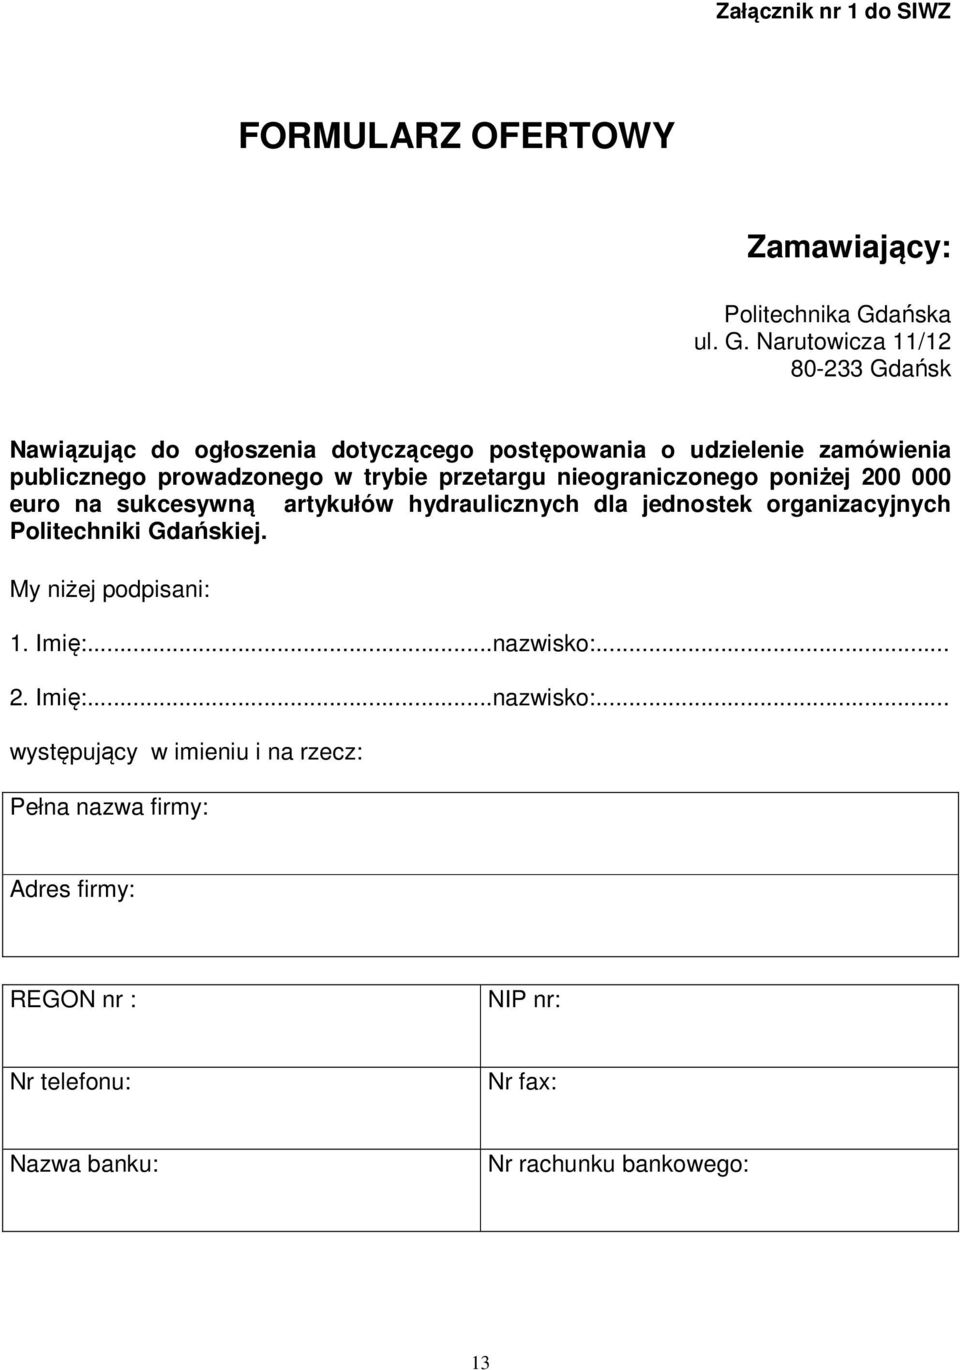 Narutowicza 11/12 80-233 Gdańsk Nawiązując do ogłoszenia dotyczącego postępowania o udzielenie zamówienia publicznego prowadzonego w trybie